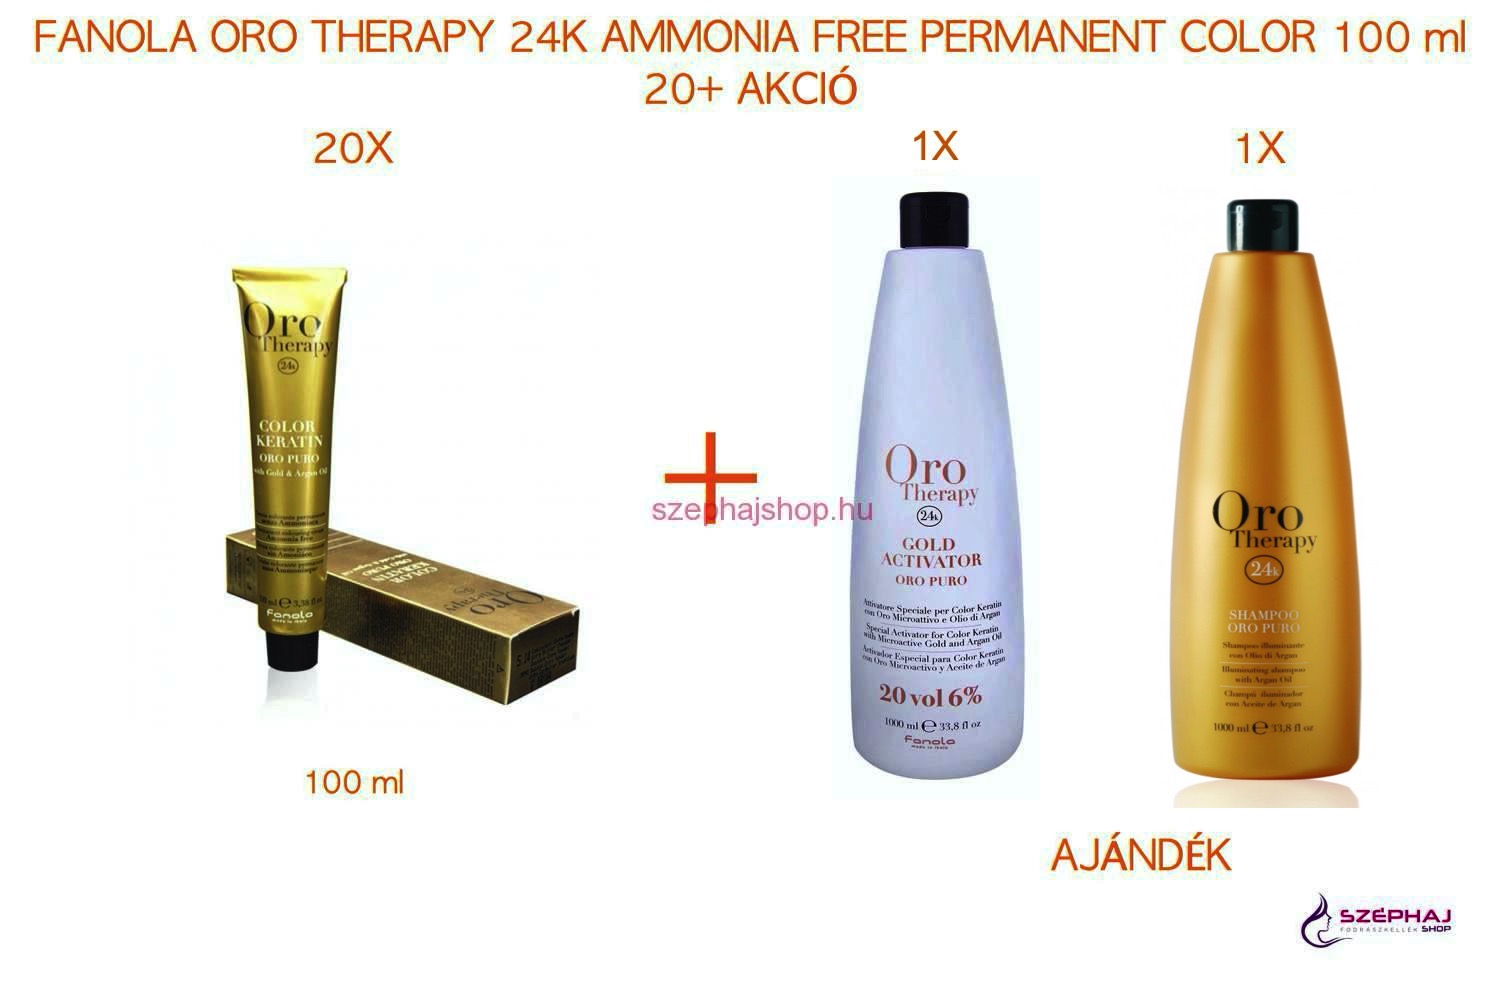 FANOLA ORO Therapy 24K Ammonia Free Permanent Color 100 ml 20+ AKCIÓ